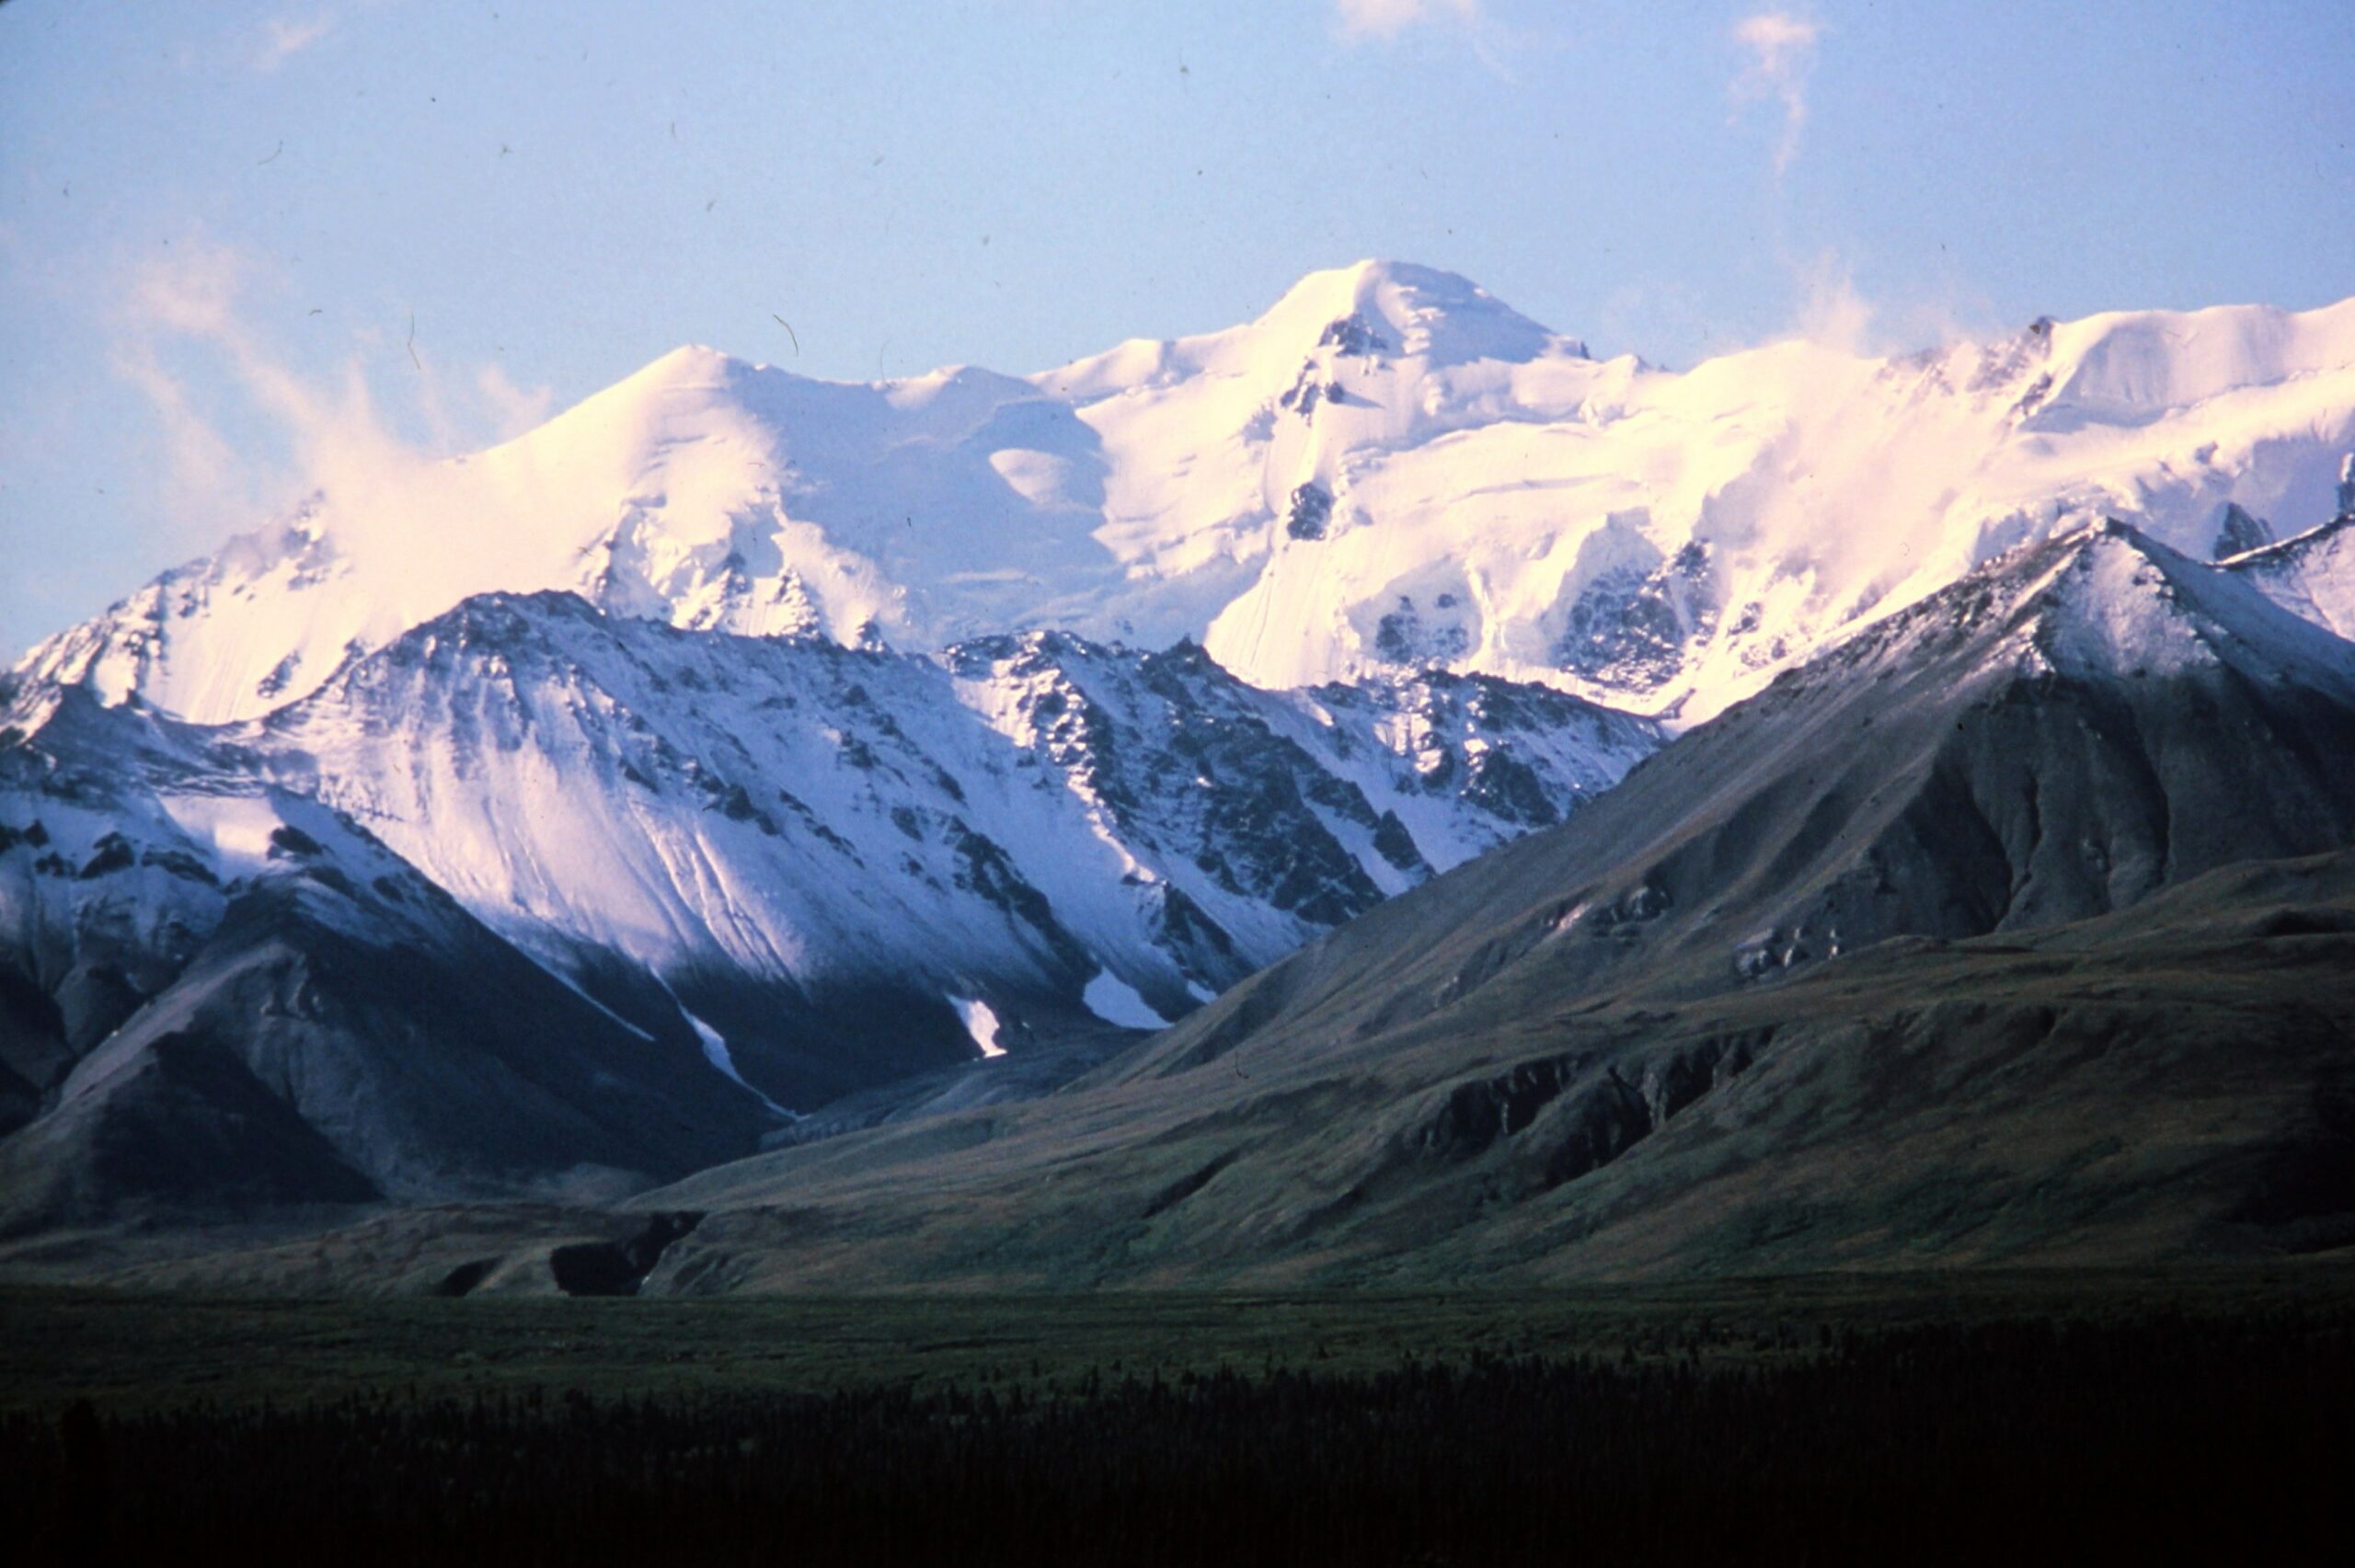 1980 Mountains